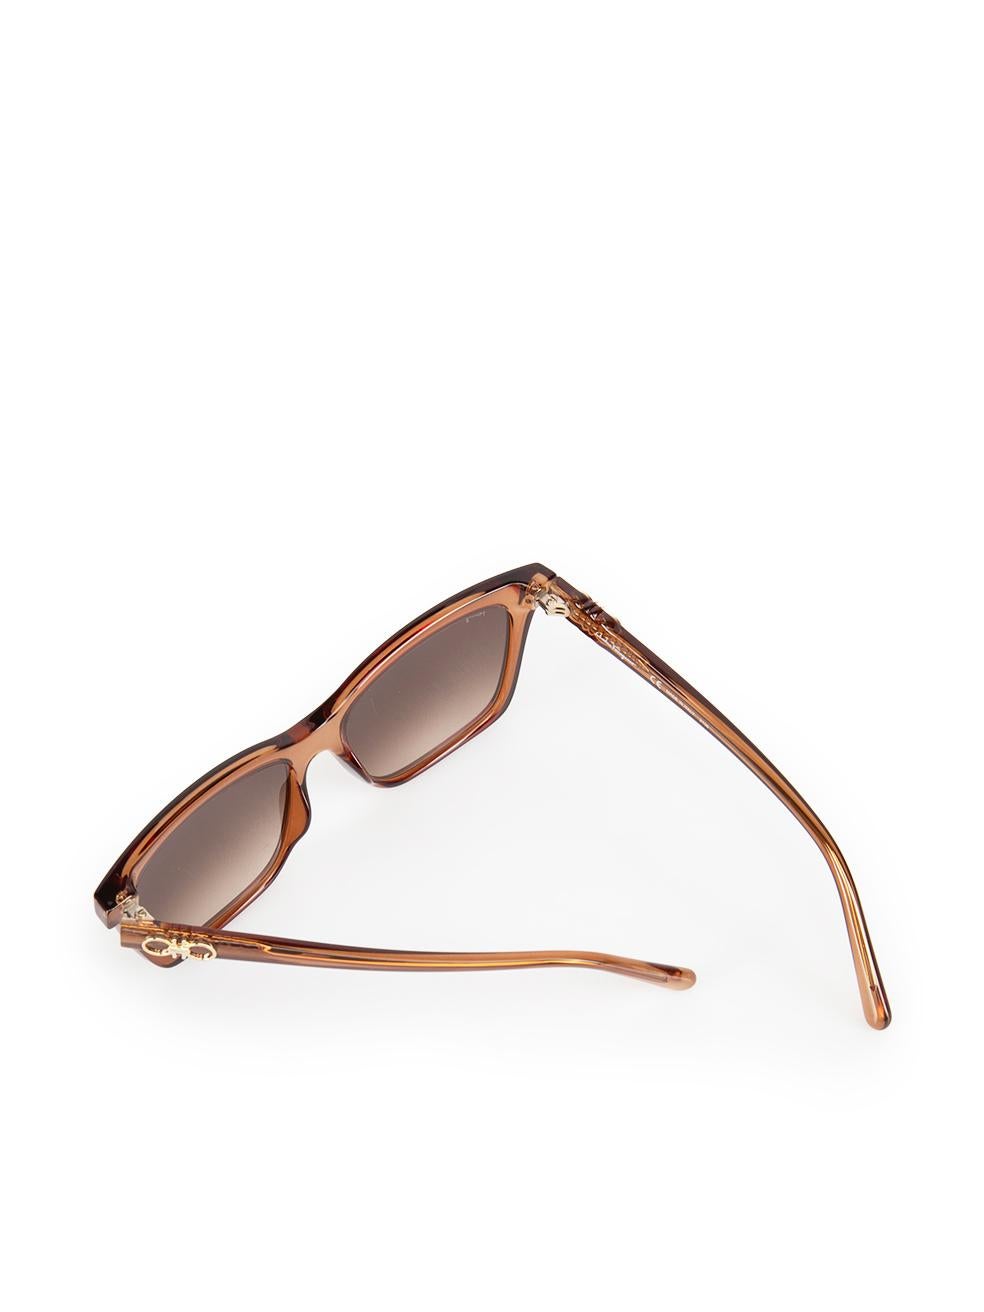 Salvatore Ferragamo Brown Gradient Rectangle Sunglasses For Sale 3